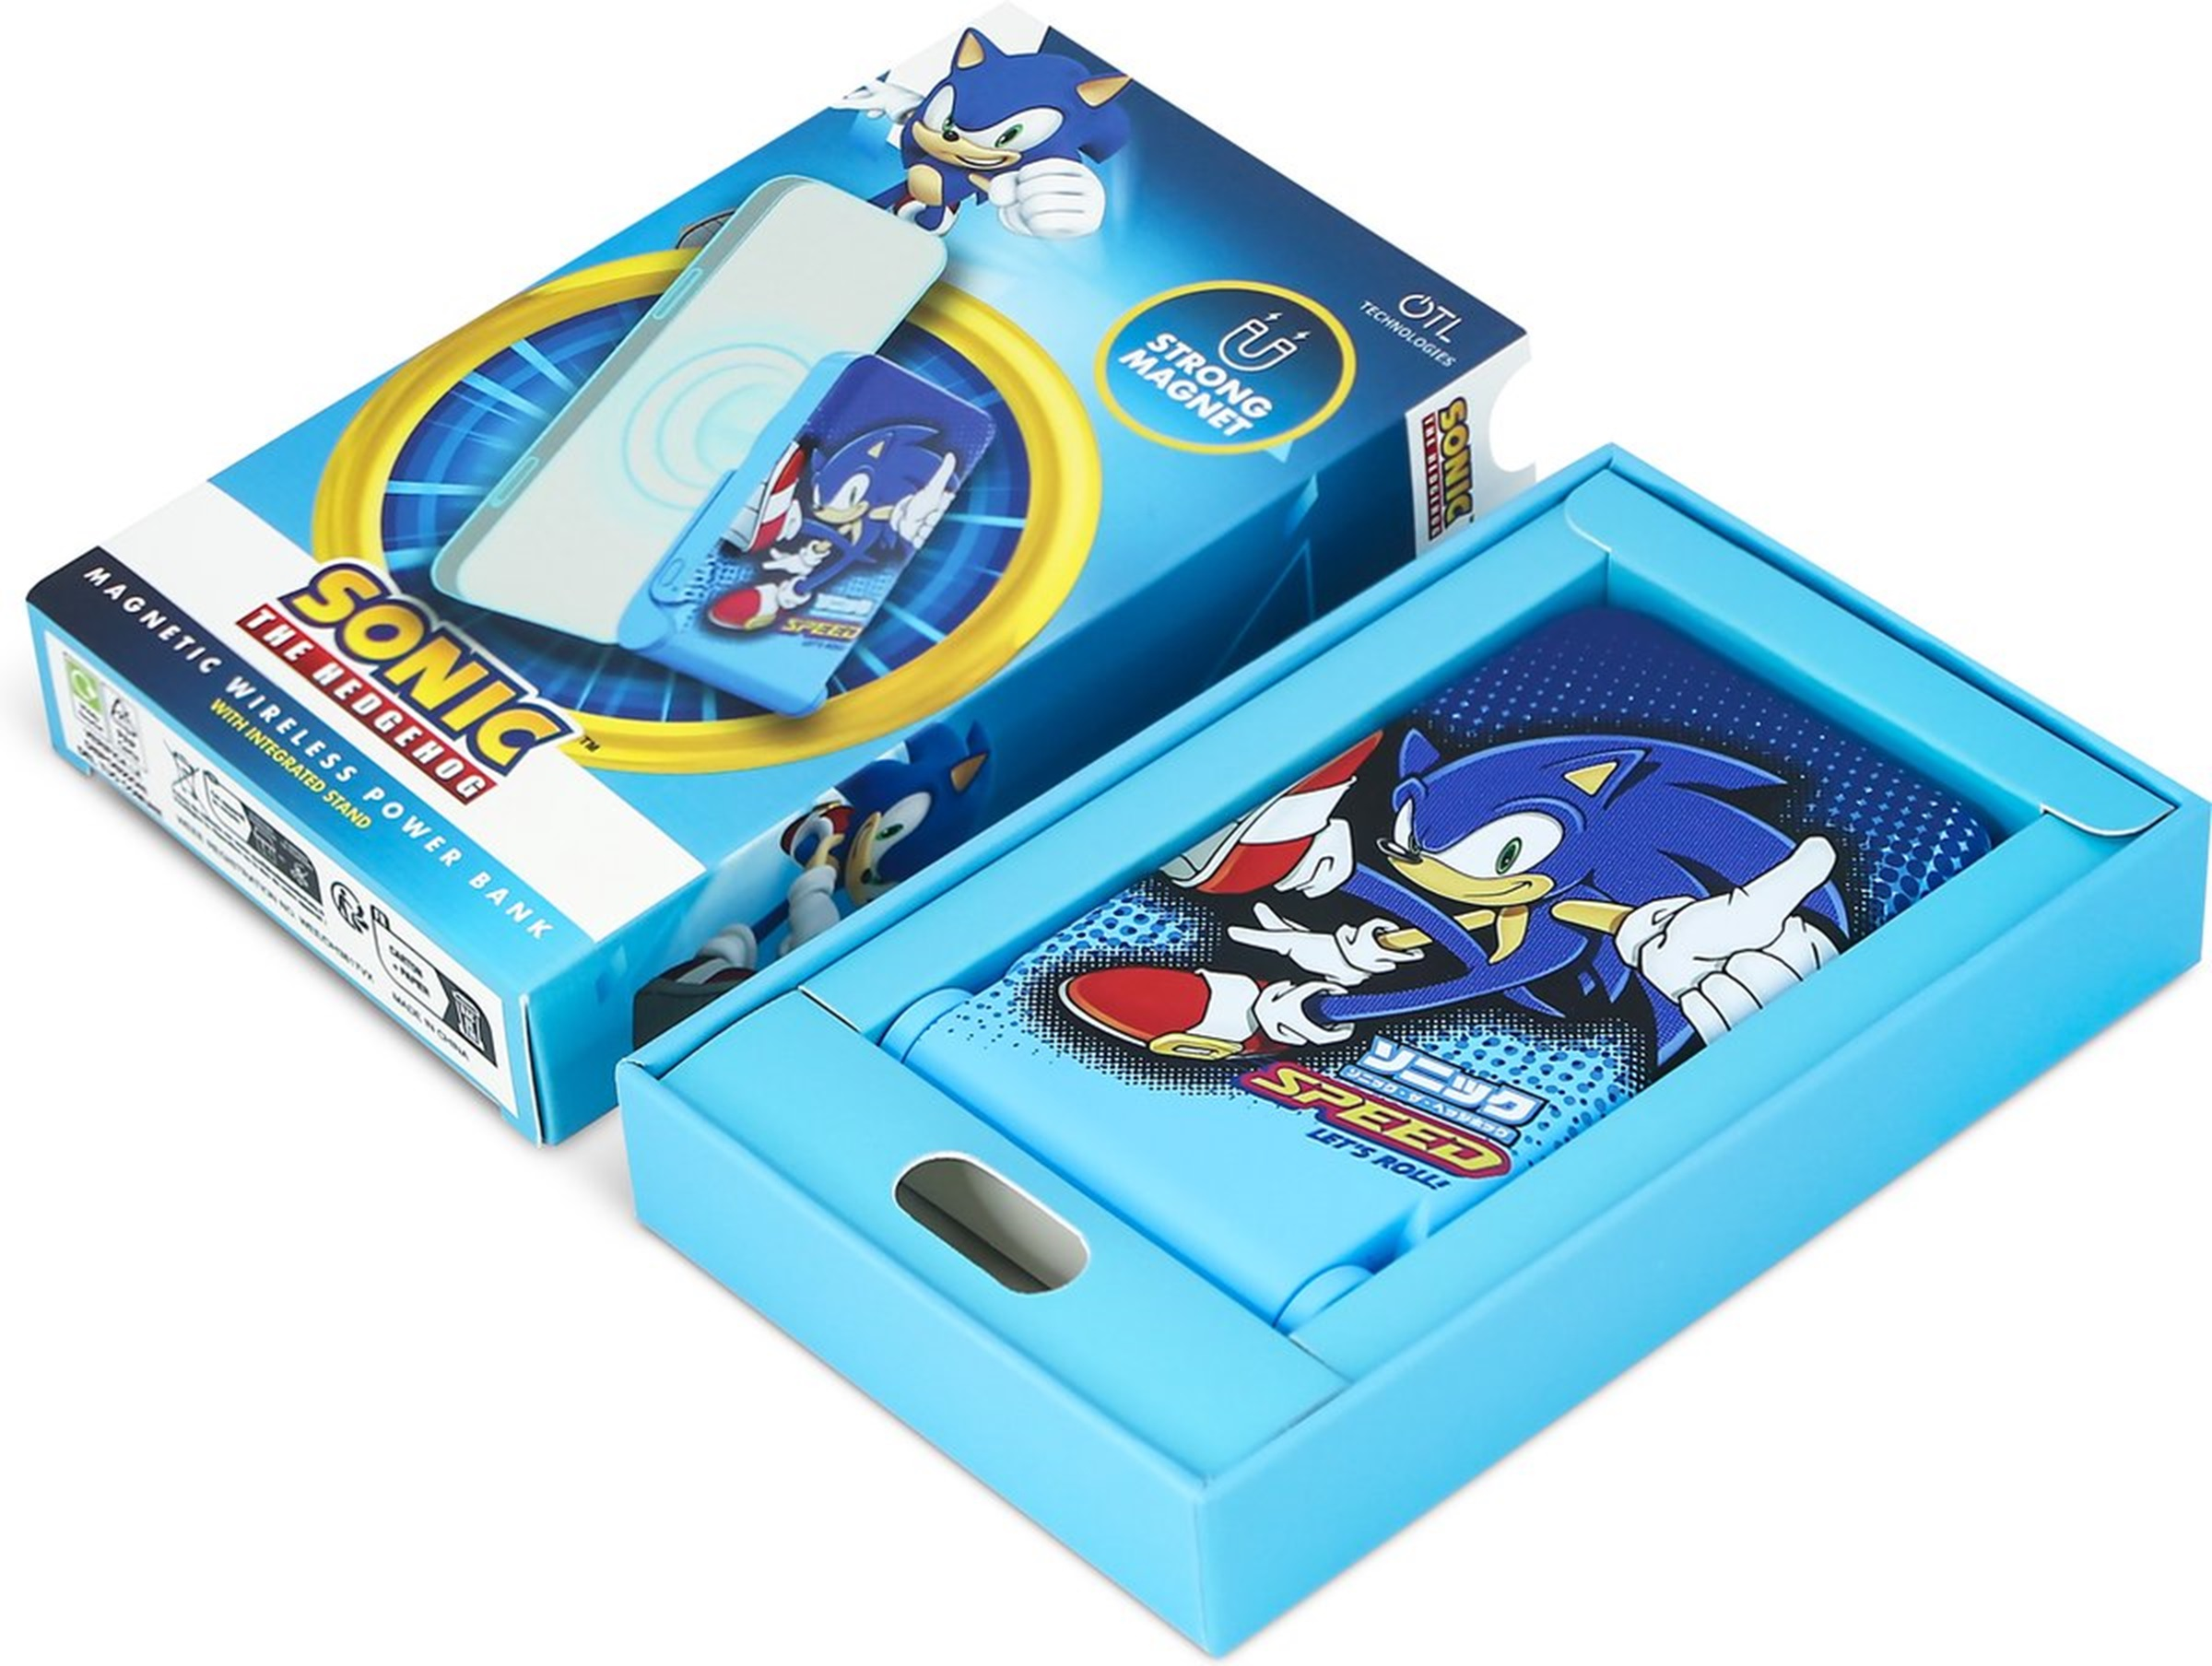 Powerbank blau the – Hedgehog Let\'s OTL 5000,00 Sonic mAH Roll